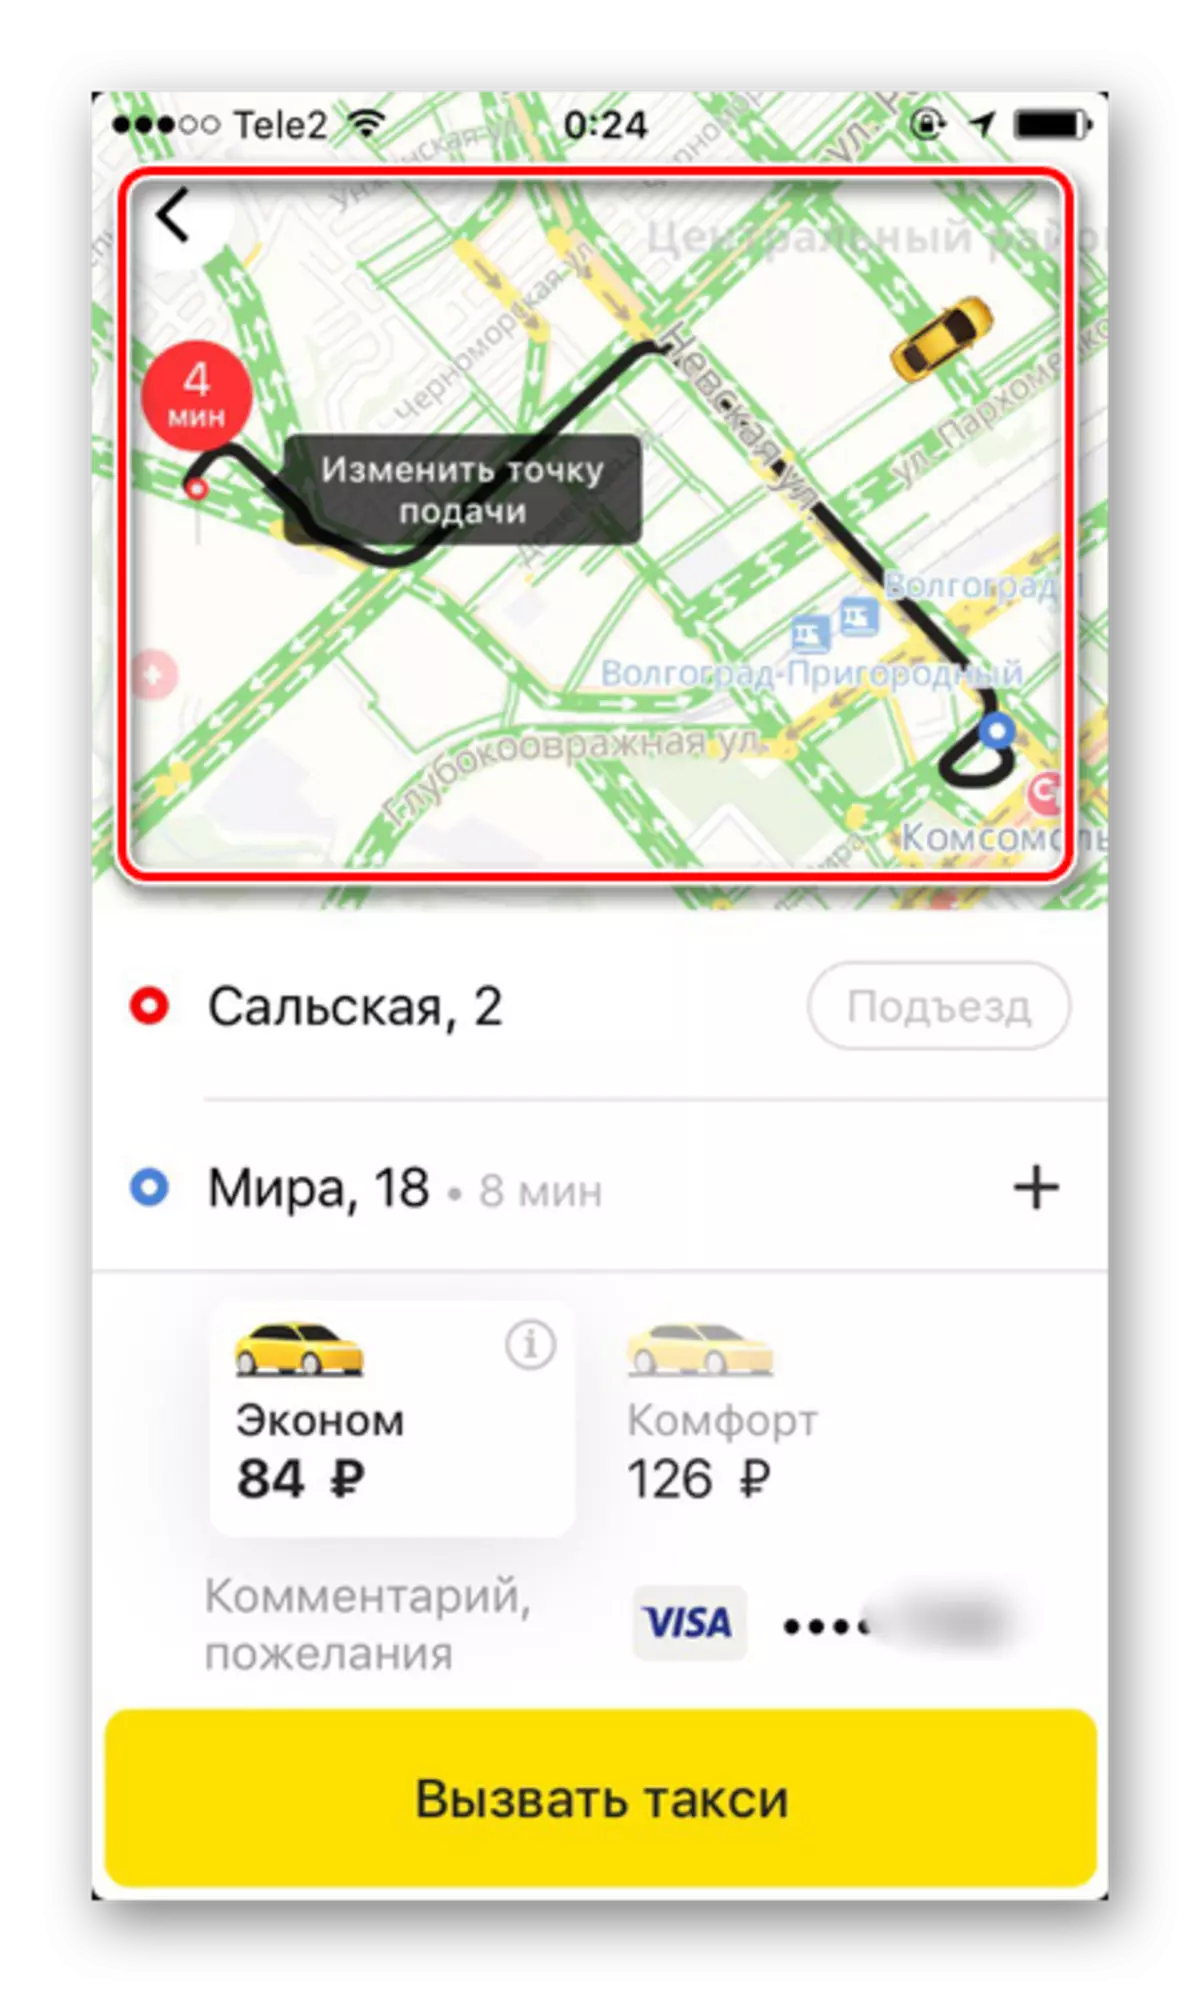 Predvajana pot v aplikaciji Yandex.Taxi na iPhone